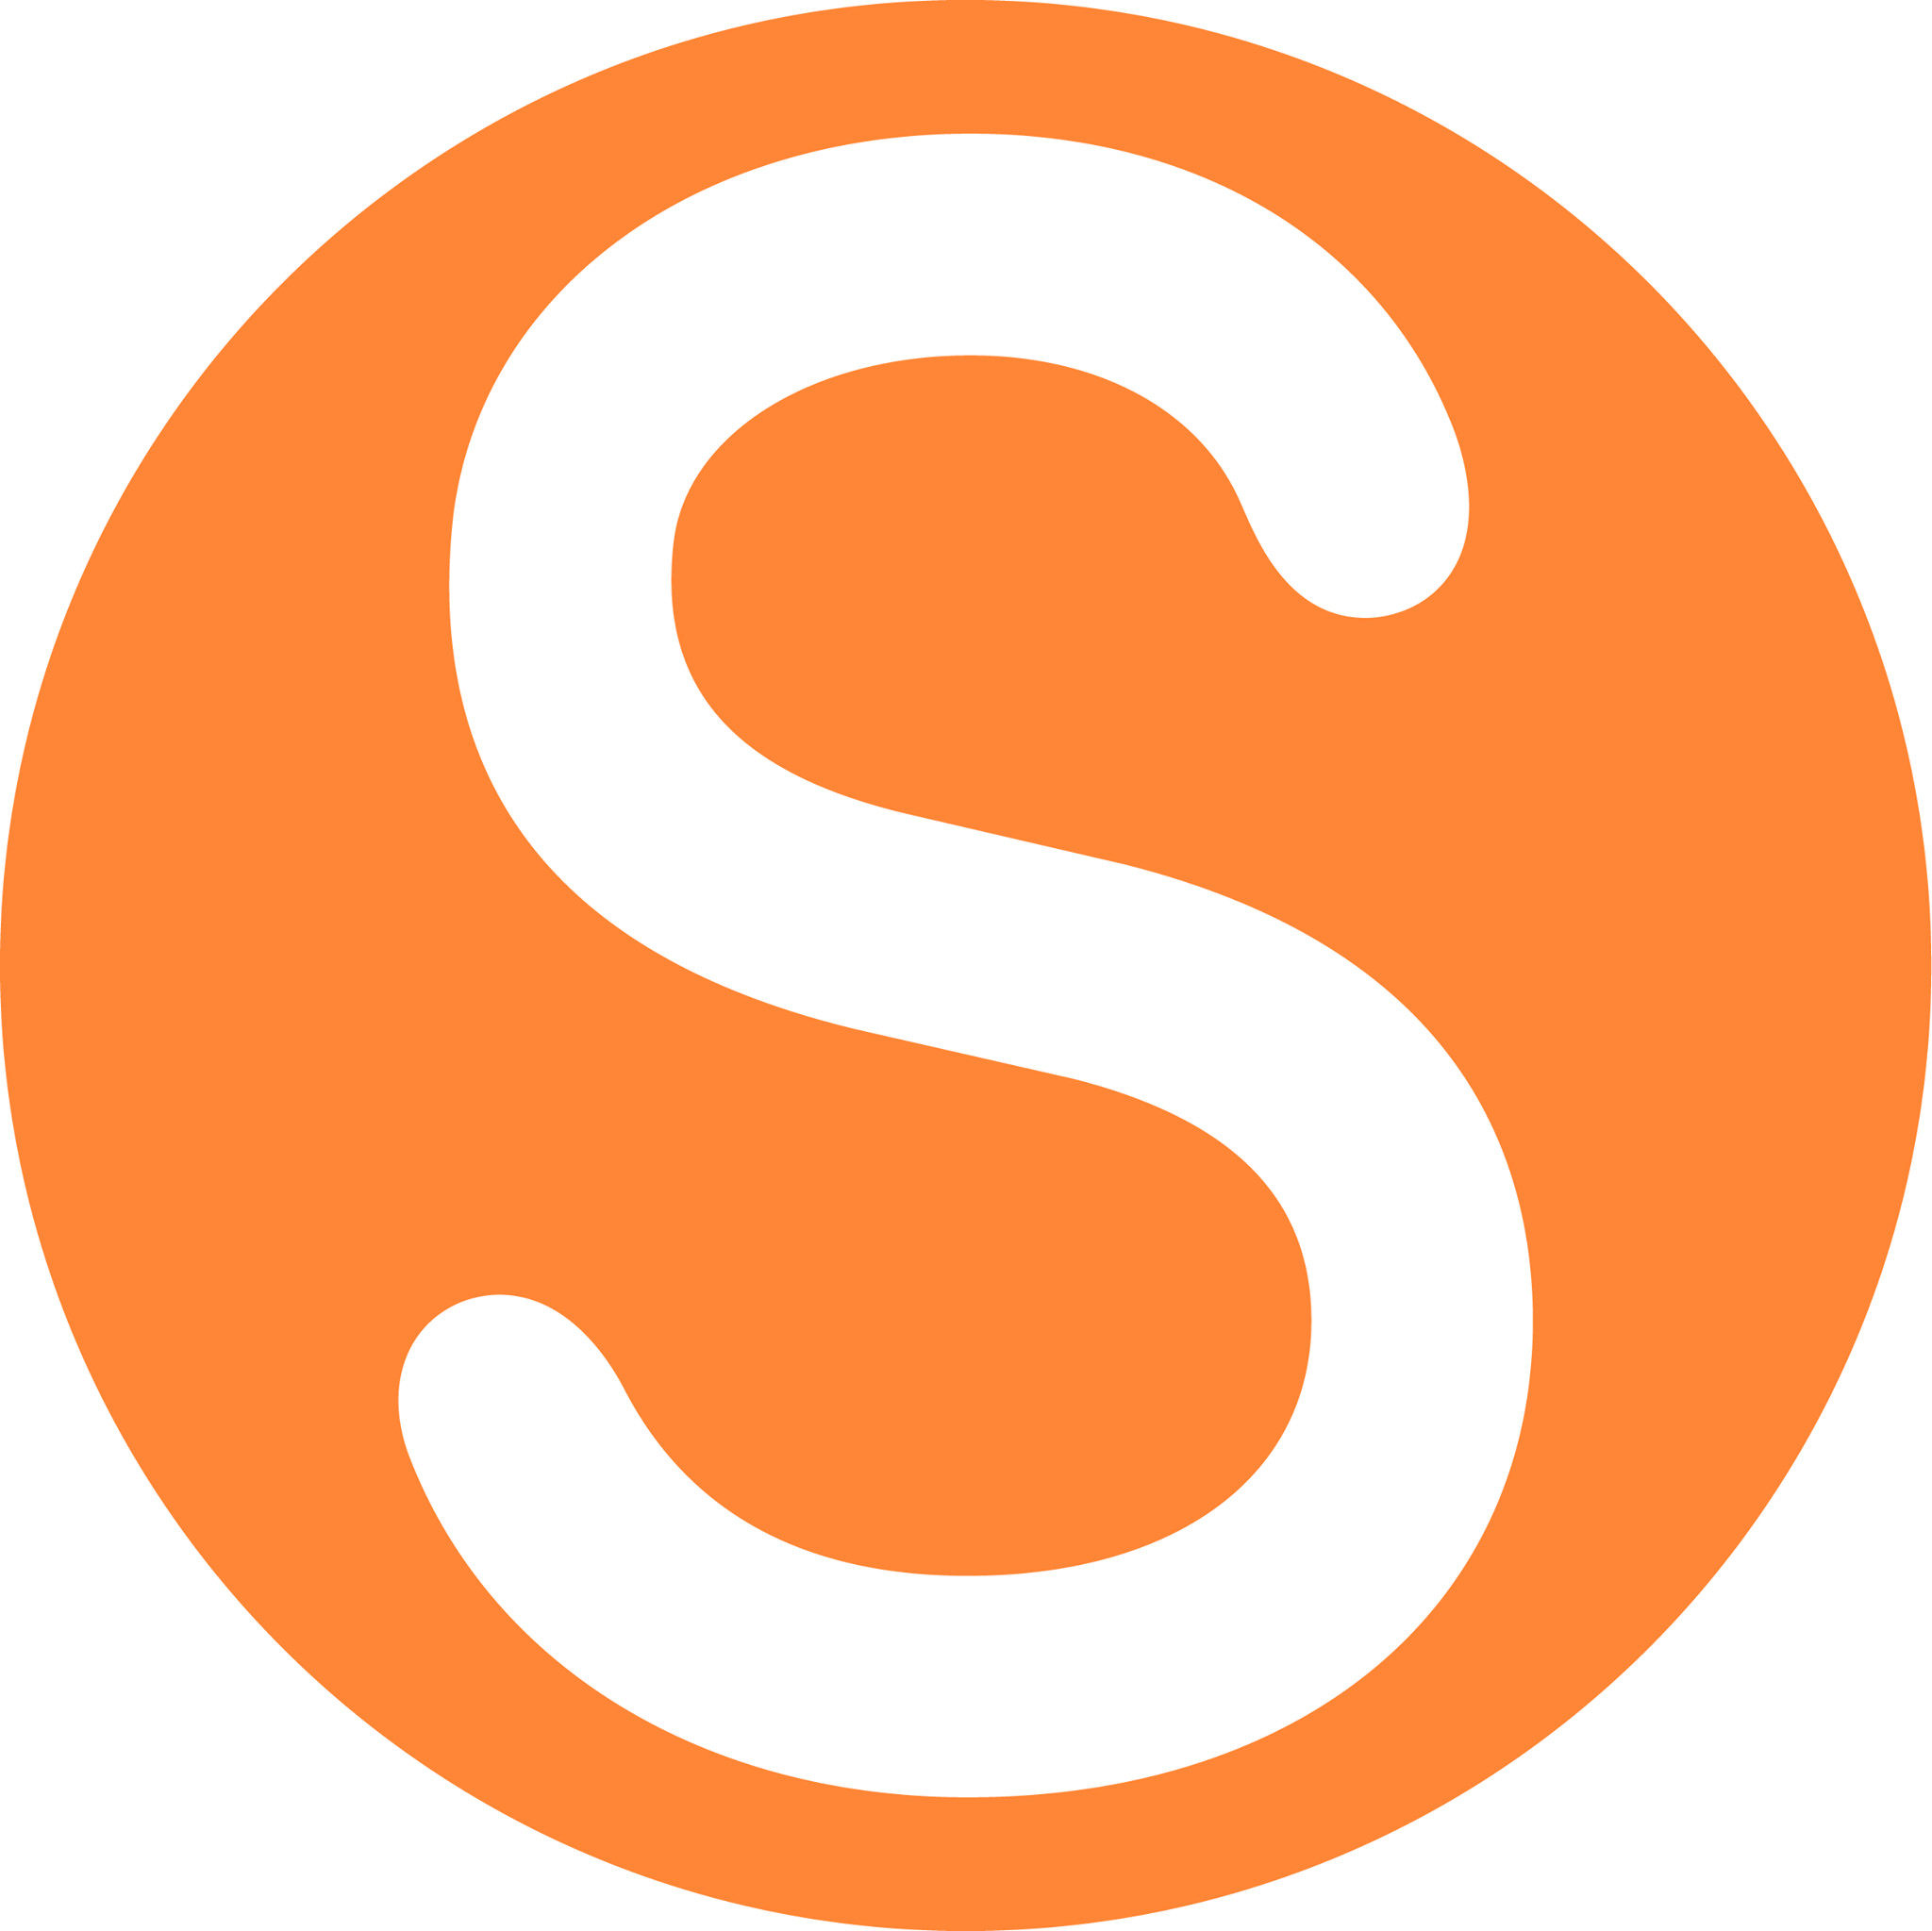 Company logo of Swap.com - Online Thrift & Consignment